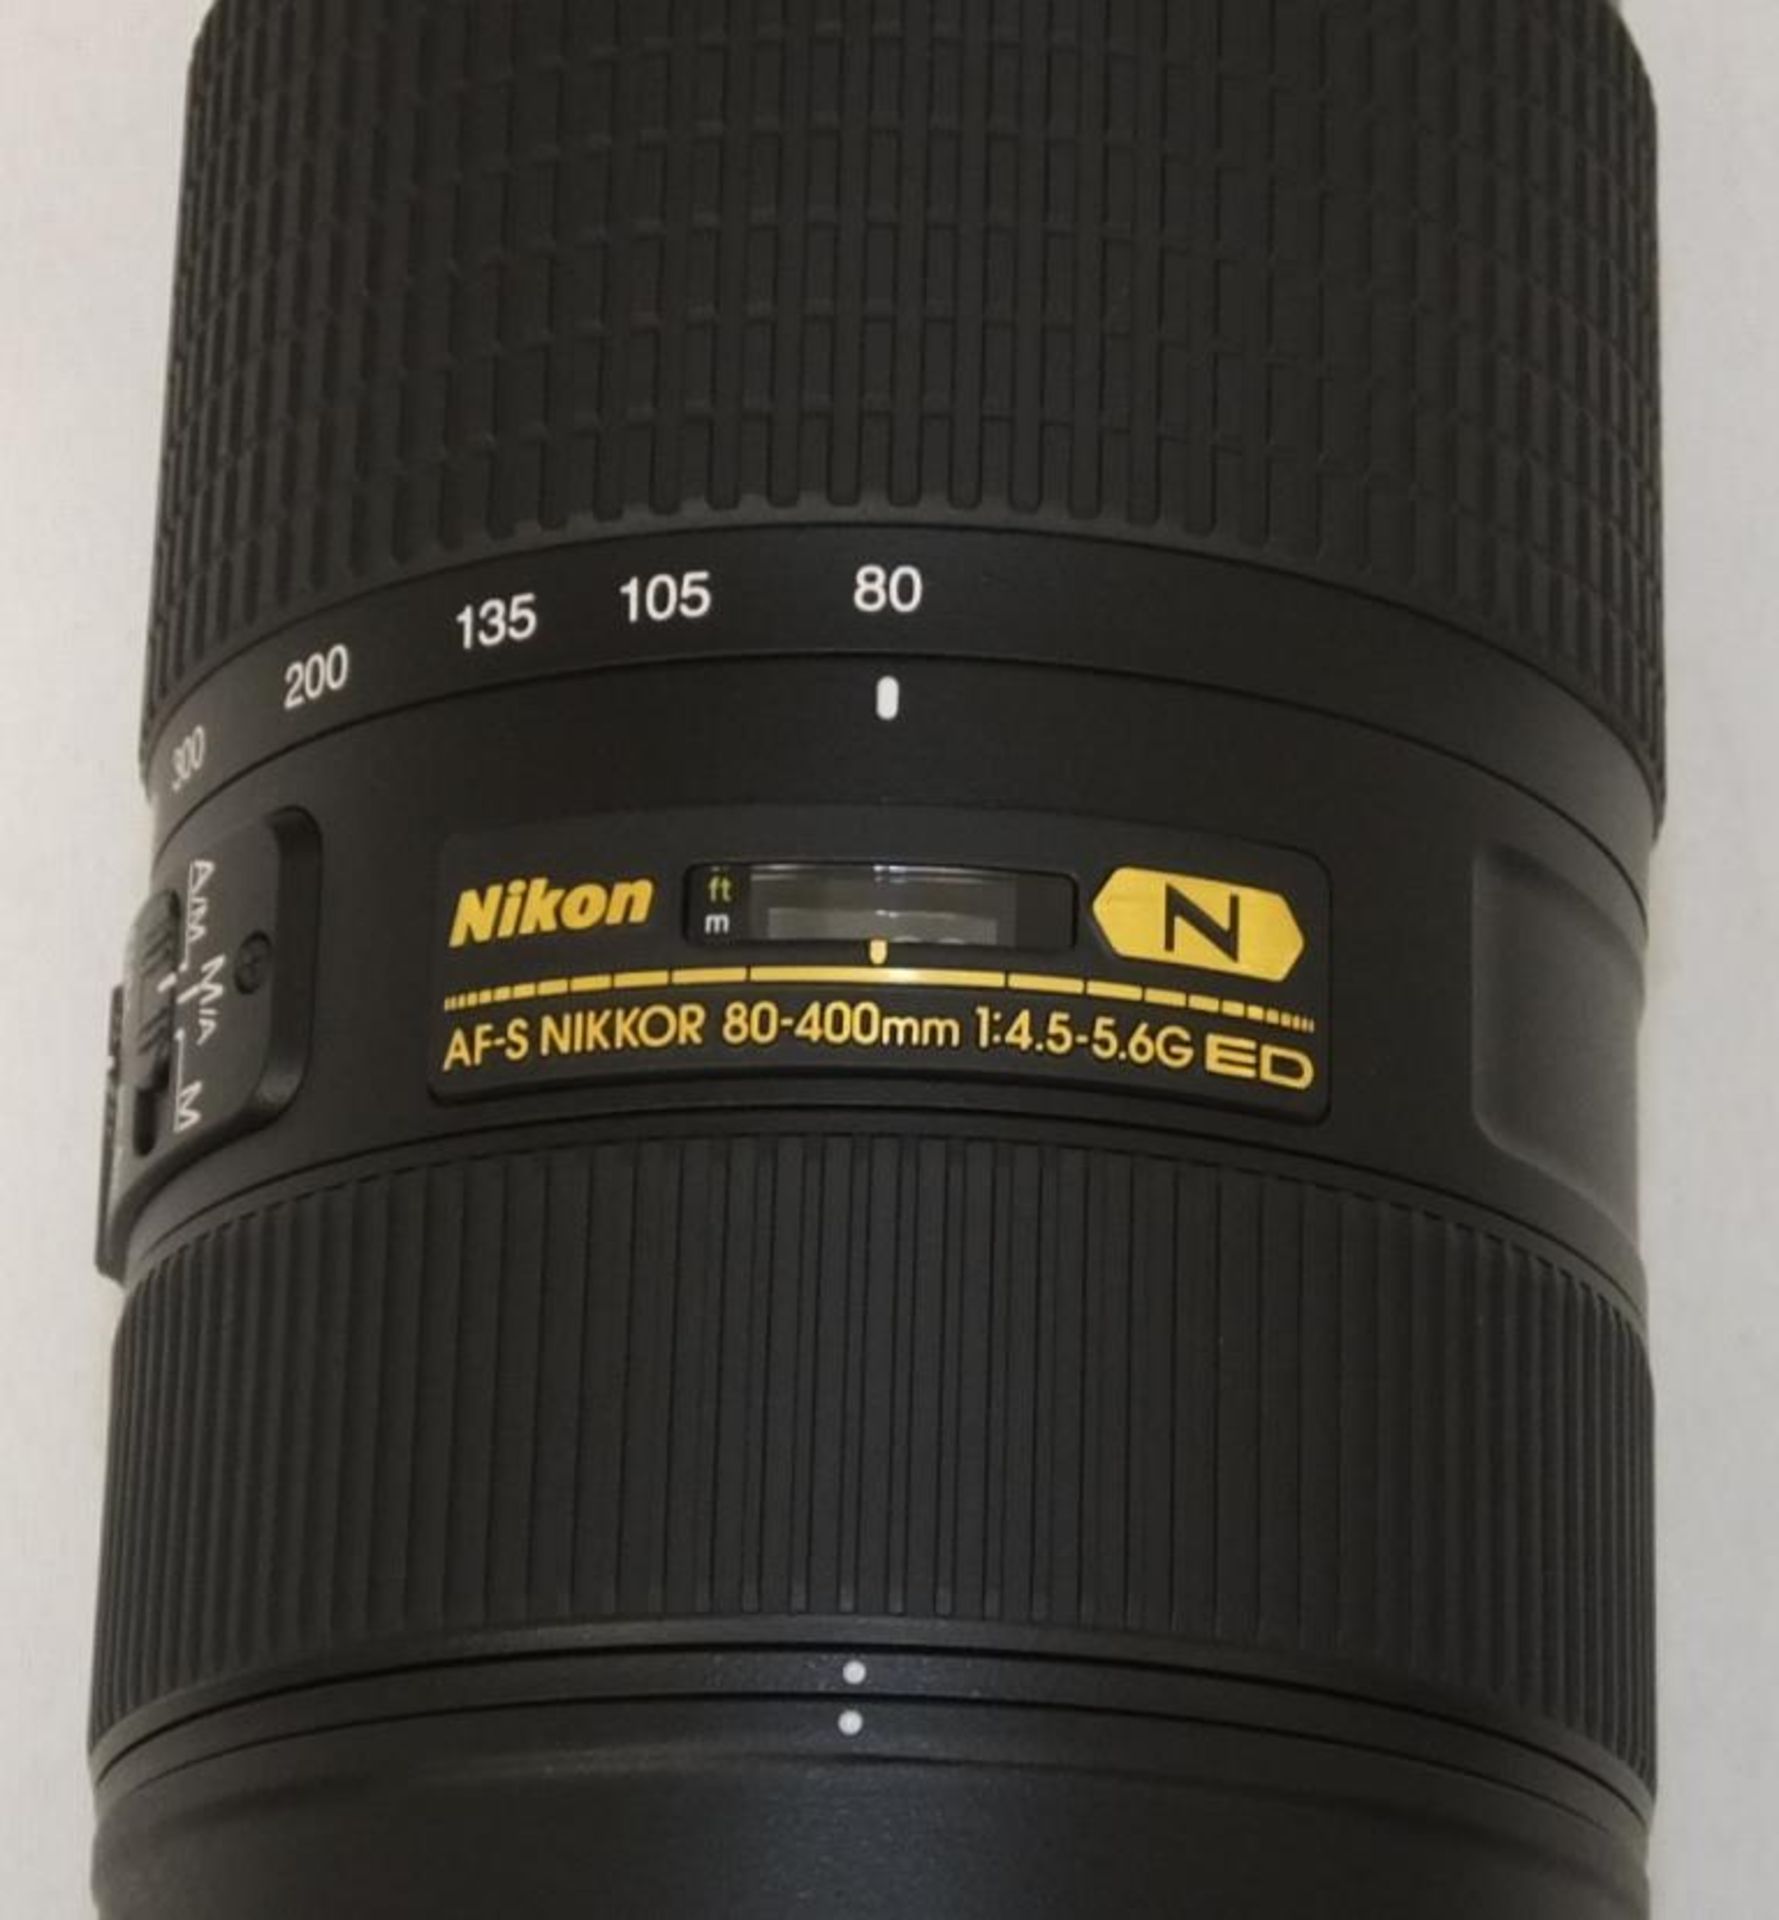 Nikon AF-S Nikkor 80-400mm F/4.5-5.6G ED VR Lens - Serial No. 268939 with Nikon CL-M2 Case - Image 3 of 7